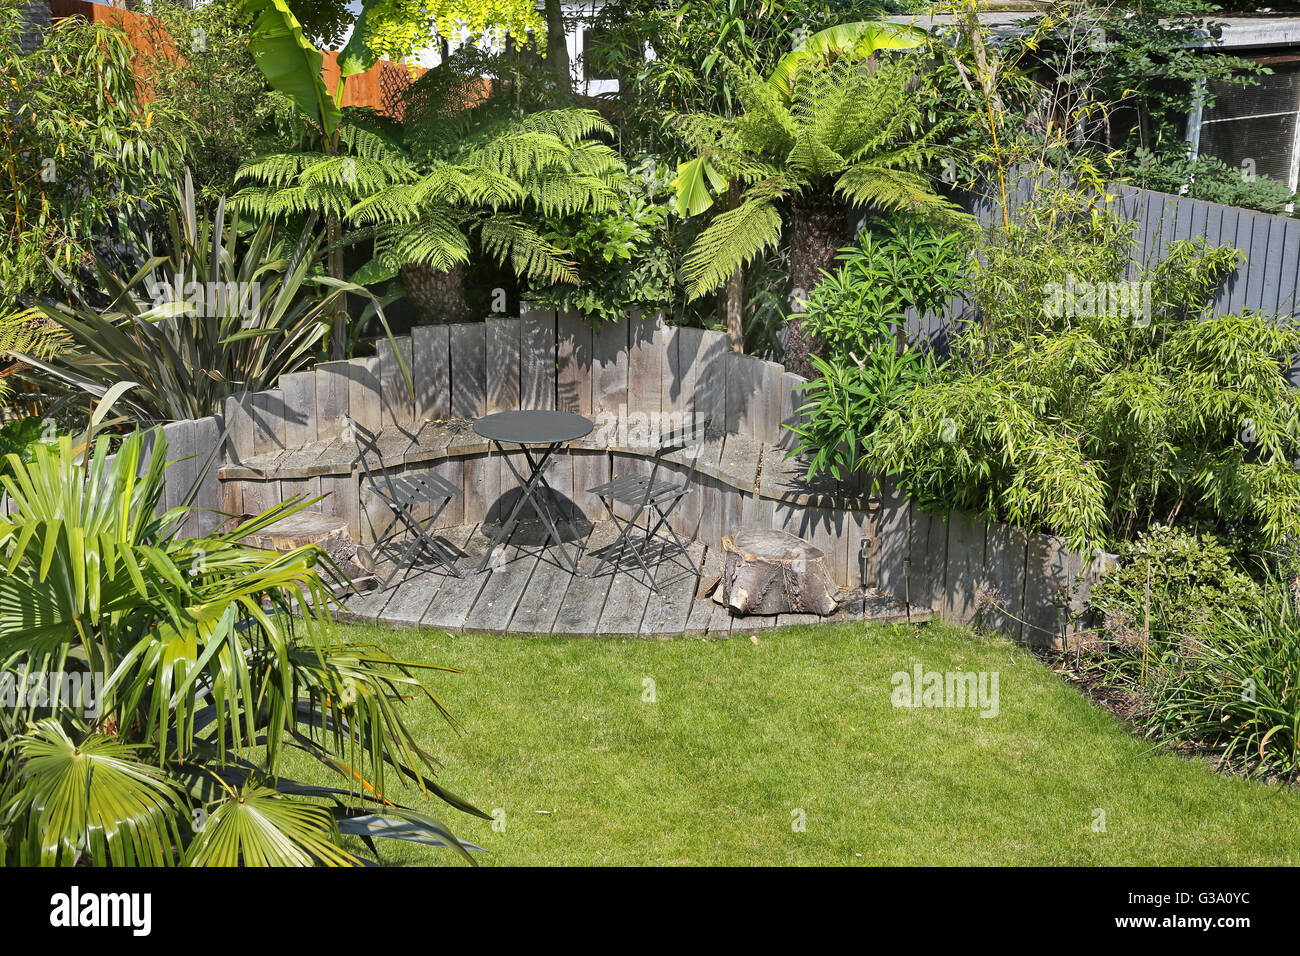 Terraza para sentarse en una apartada zona de Londres jardín posterior con grandes, plantas perennes: helechos, bambú, plátanos y japónica Foto de stock